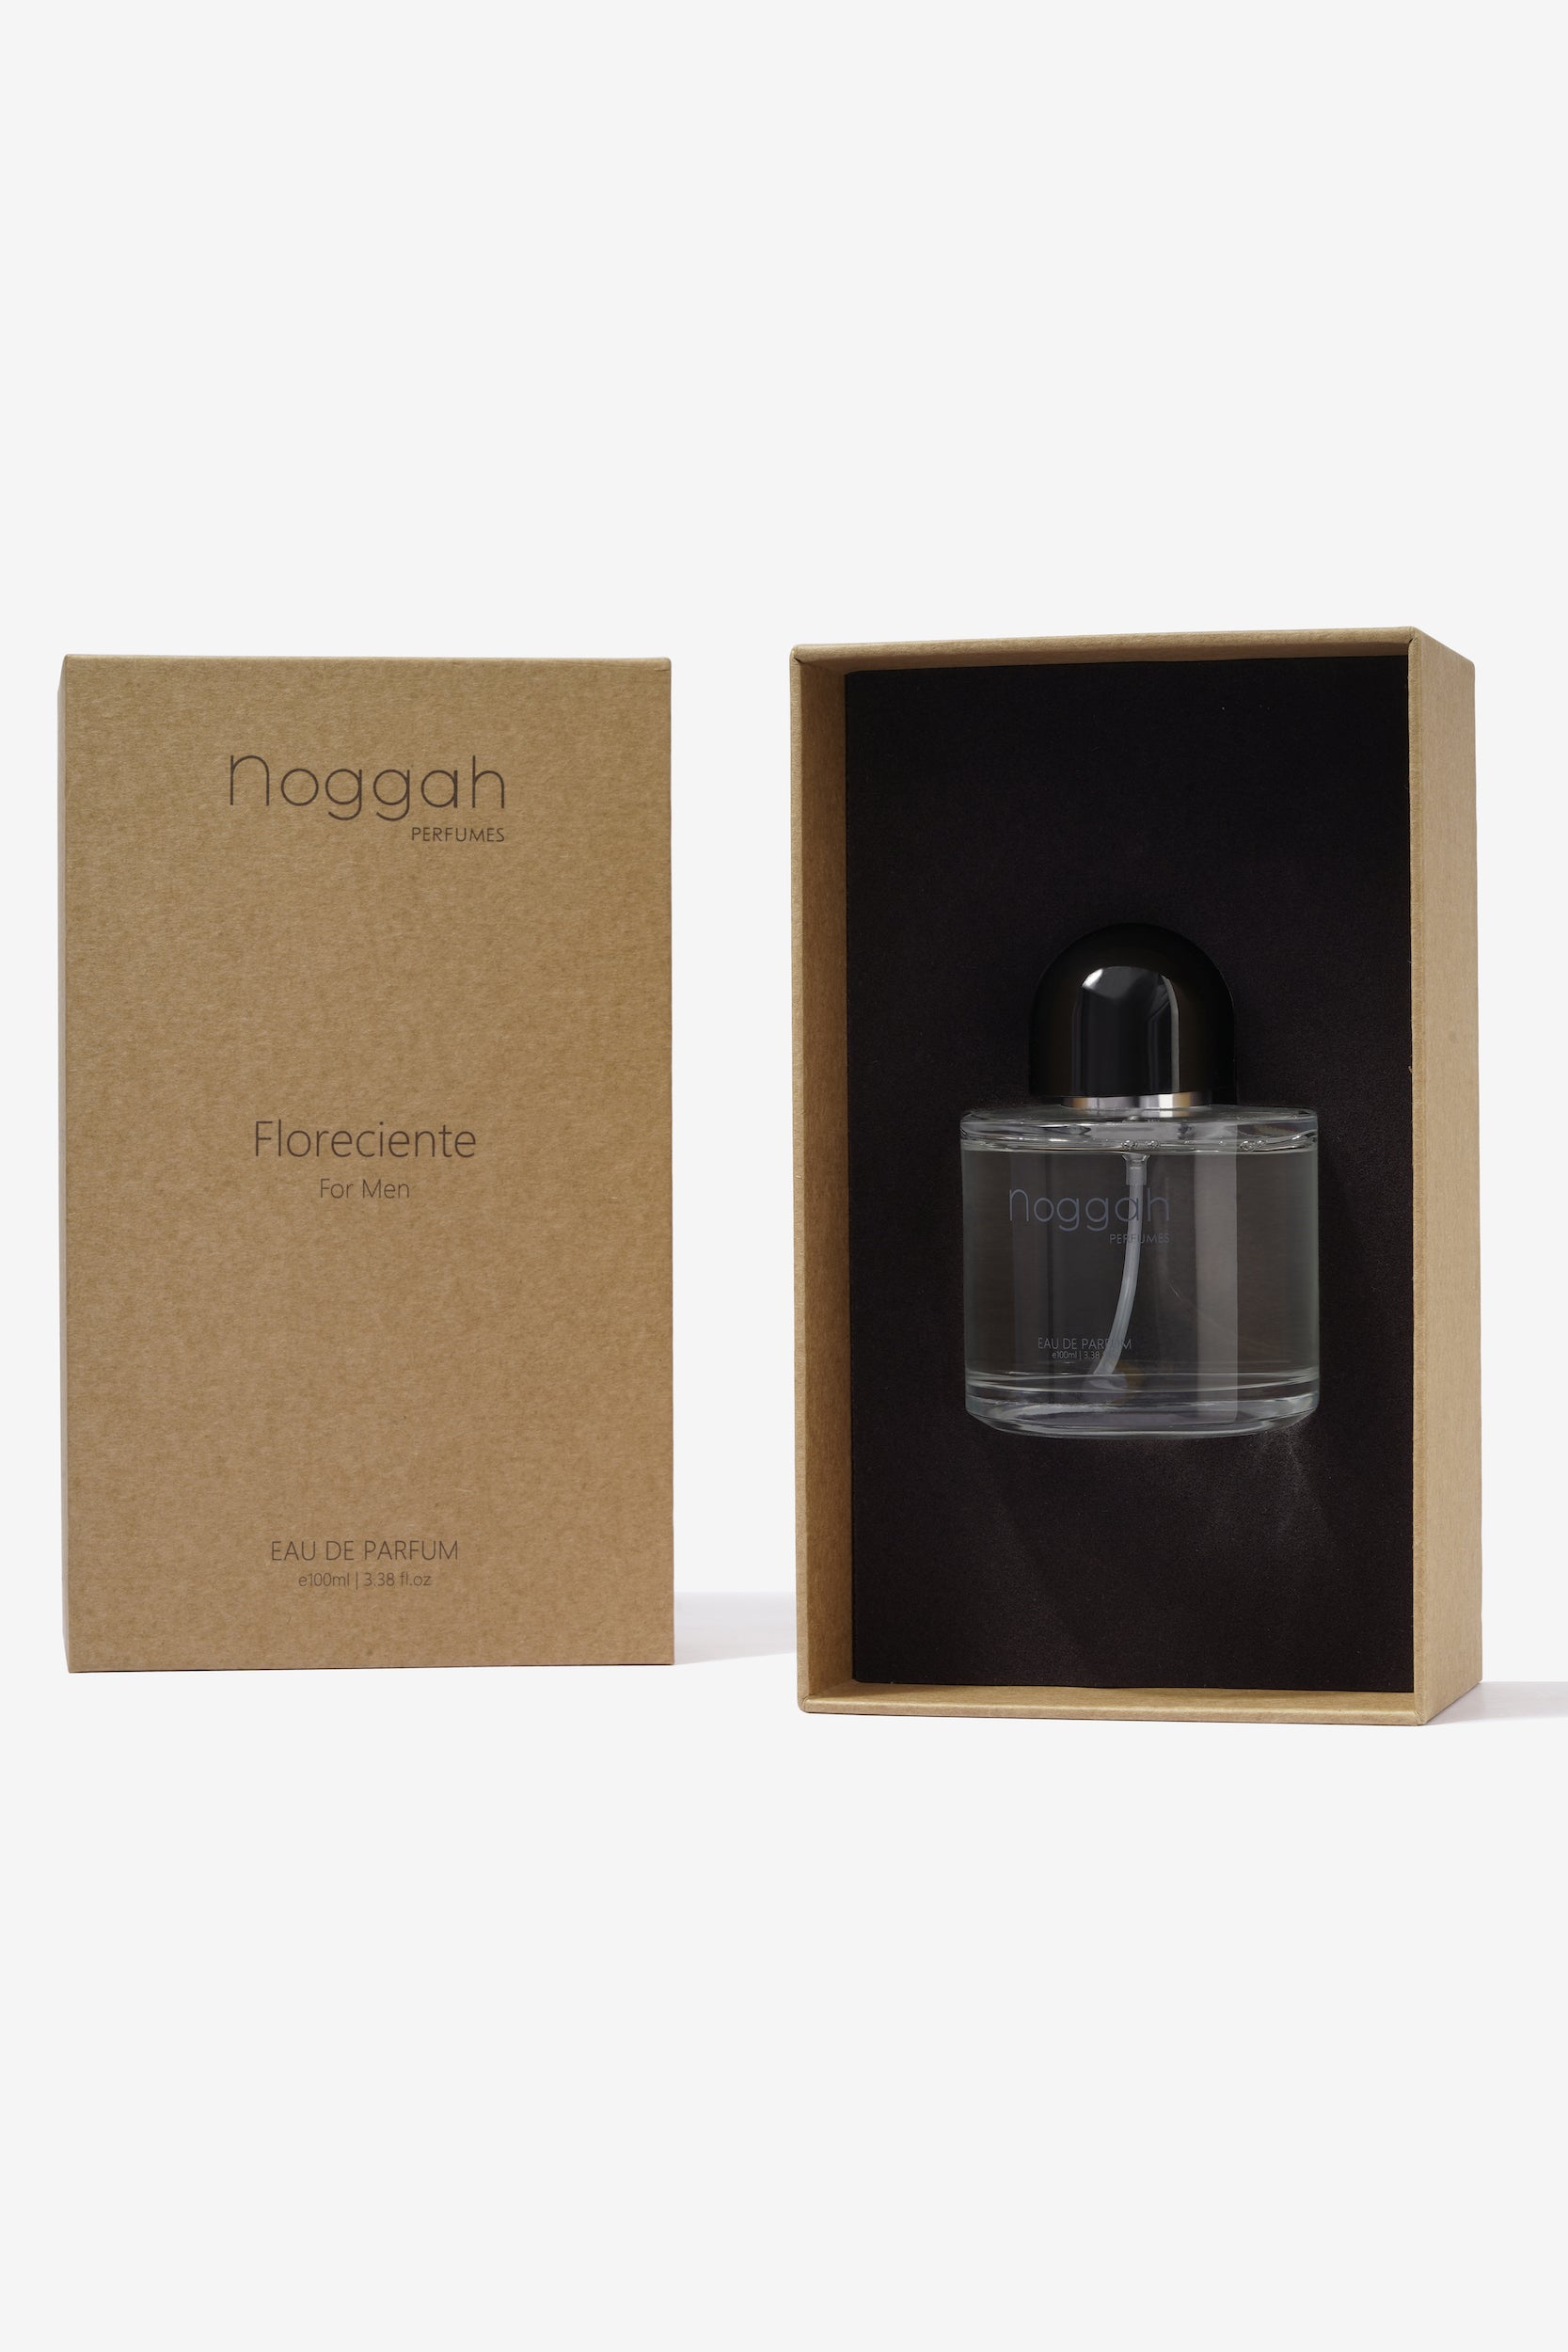 Floreciente for Men  Eau De Parfum e100ml – Noggah Perfumes